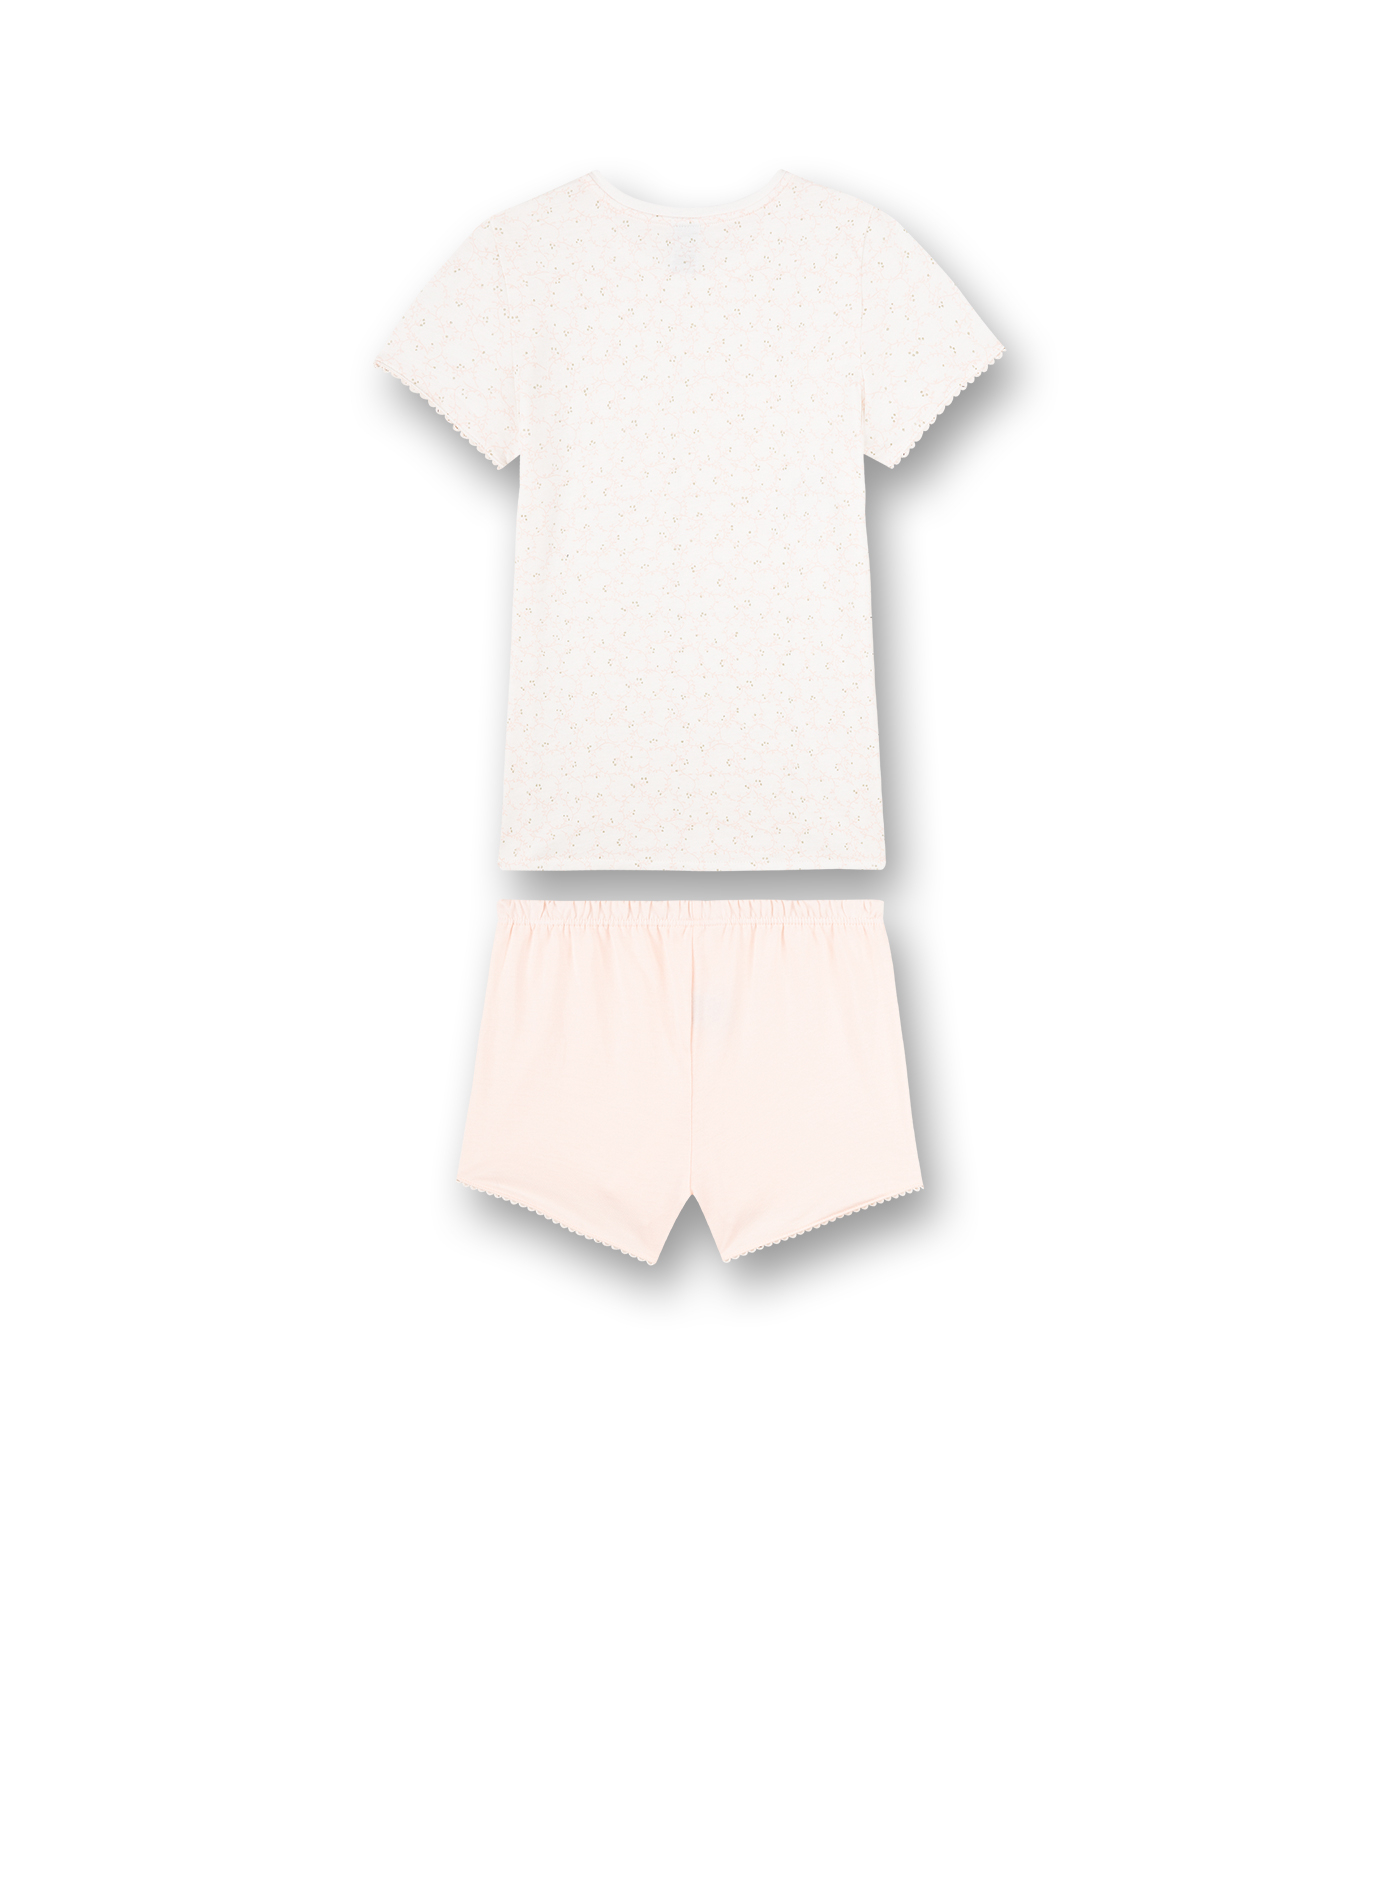 Mädchen-Schlafanzug kurz Weiß Art Deco